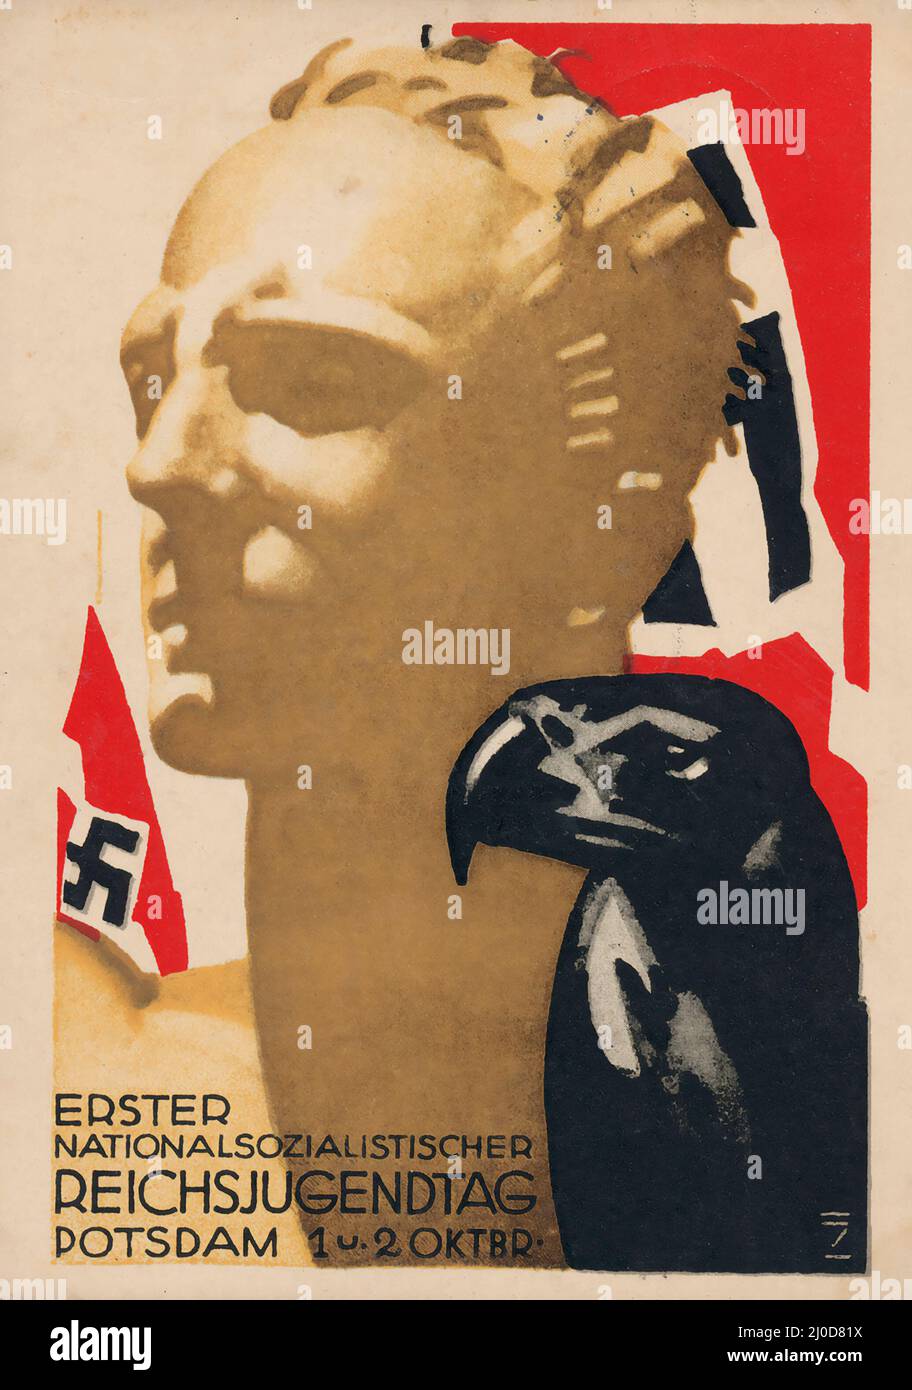 Propaganda nazista, Ludwig HOHLWEIN - cartolina fotografica con pittura propagandistica di un membro biondo Hitler Youth (HJ). Reichsadler, aquila imperiale tedesca. Foto Stock